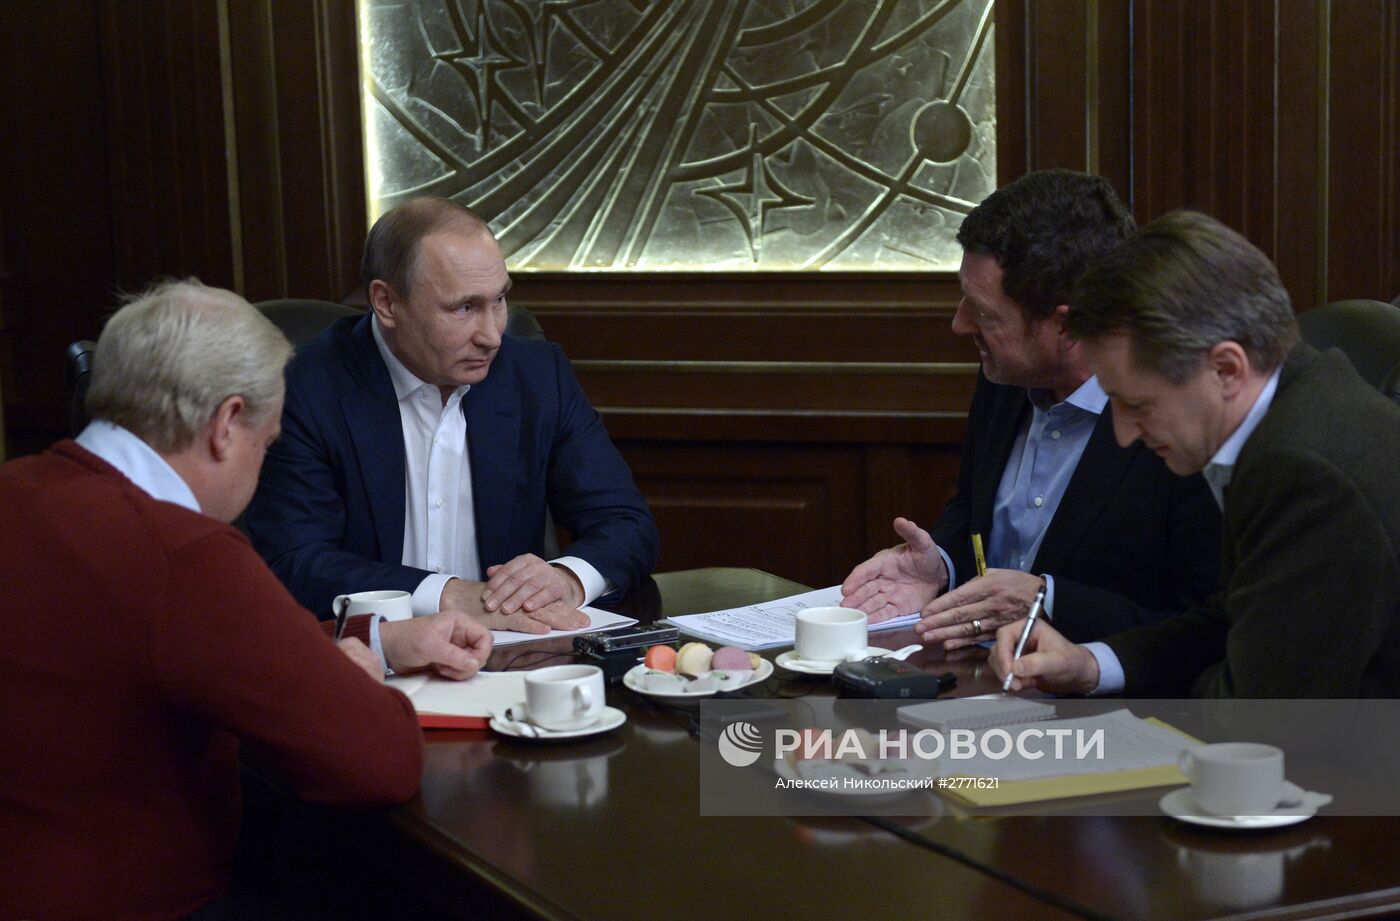 Президент РФ В. Путин дал интервью немецкому изданию Bild